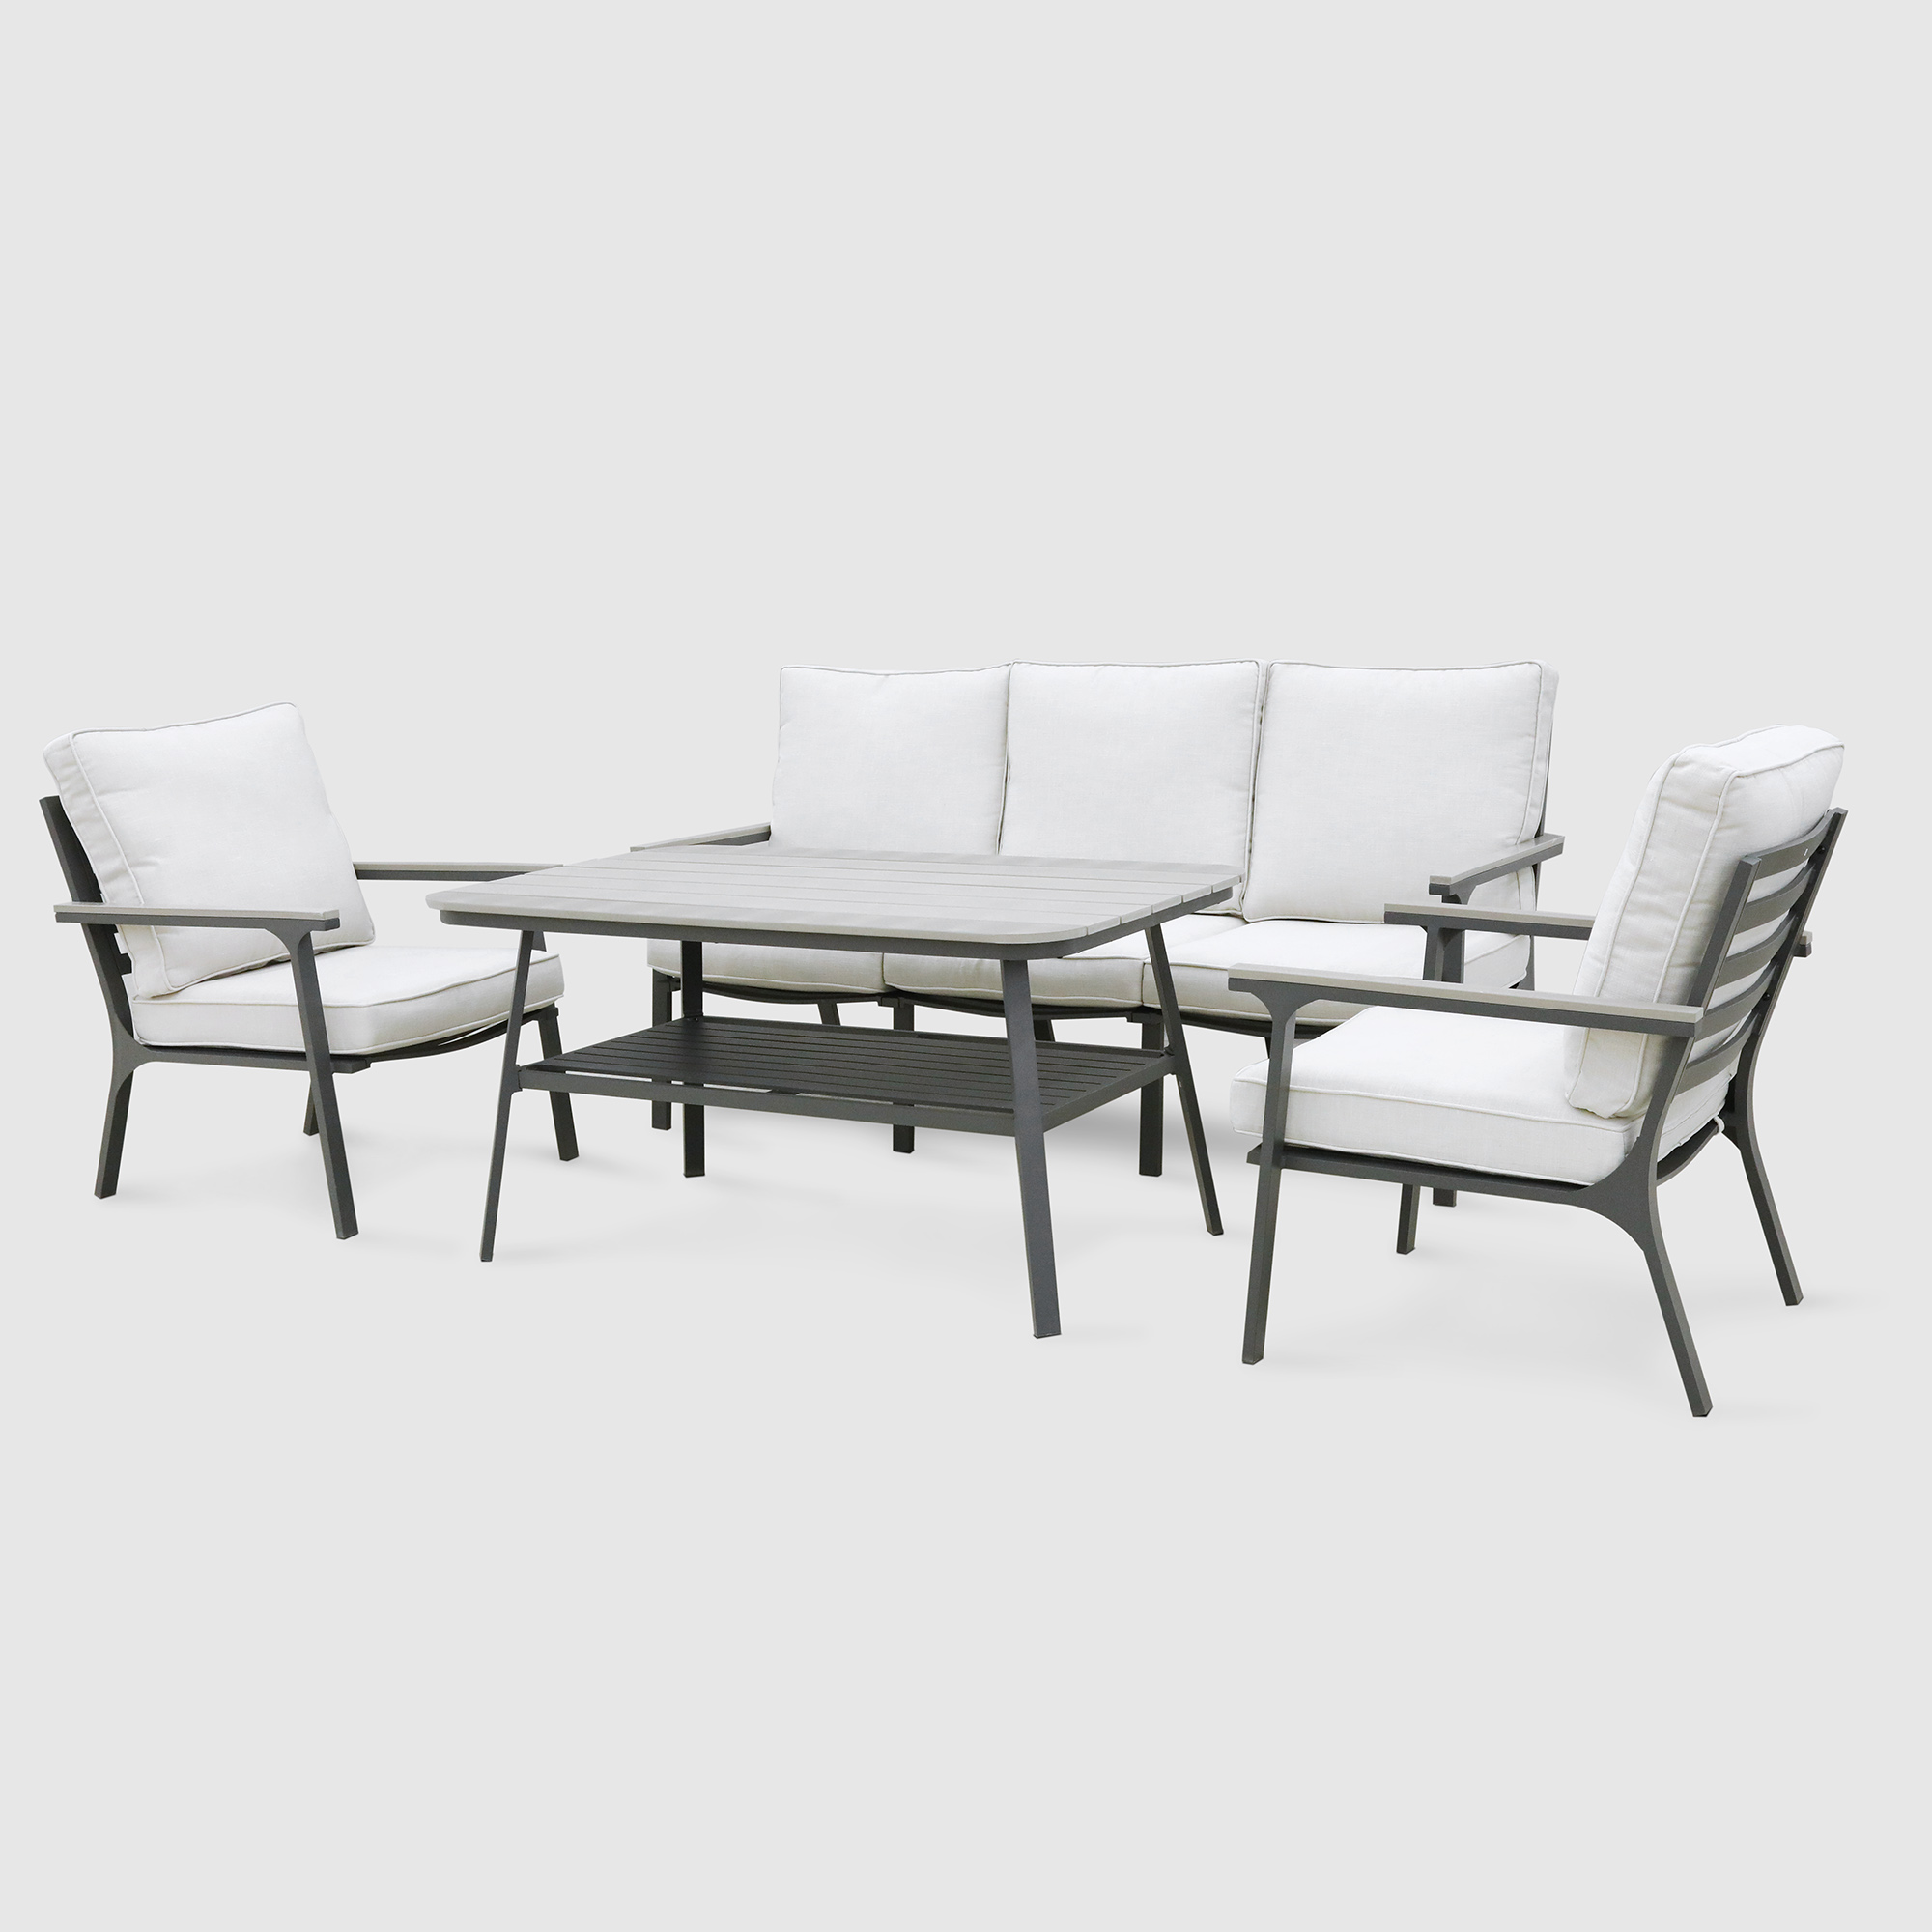 Комплект мебели Greenpatio серый с белым 4 предмета комплект мебели greenpatio с вращающимися стульями 5 предметов